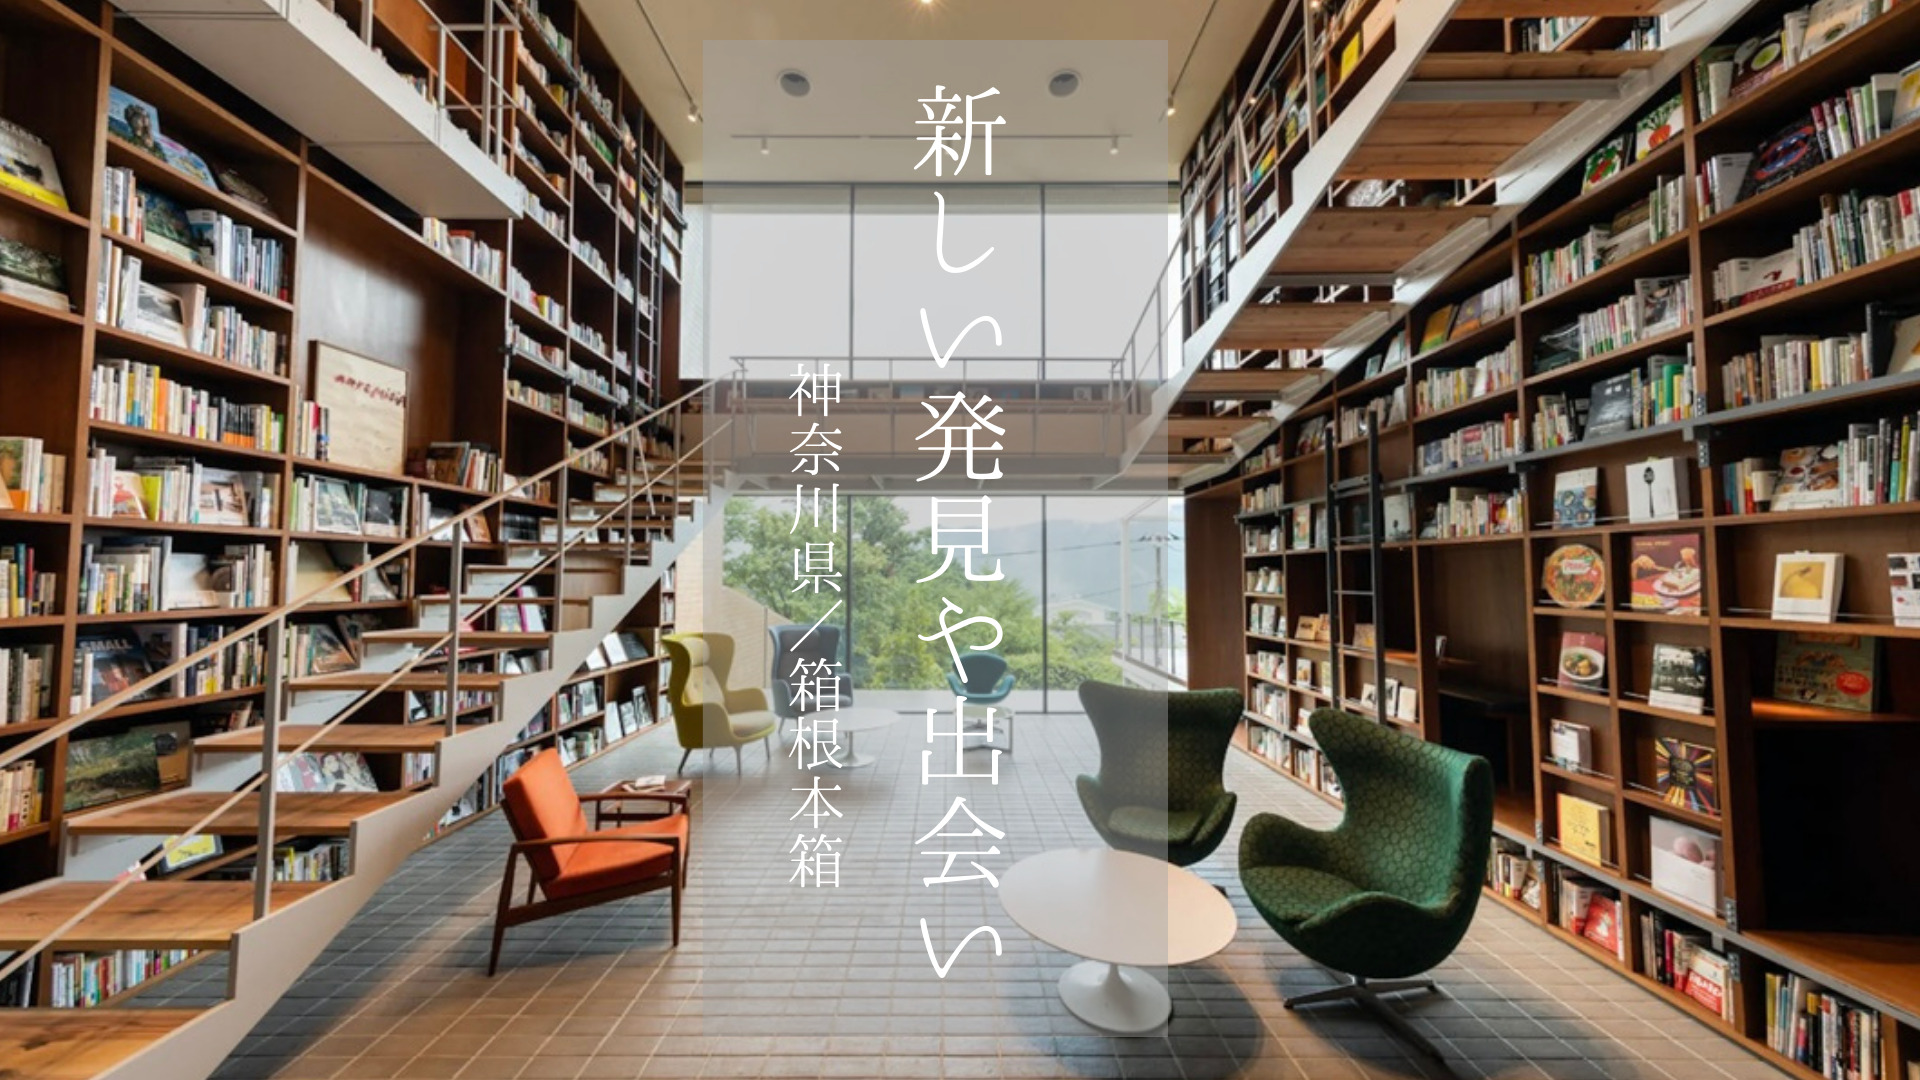 【神奈川県】素敵な出会いや発見の旅をするなら「箱根本箱」